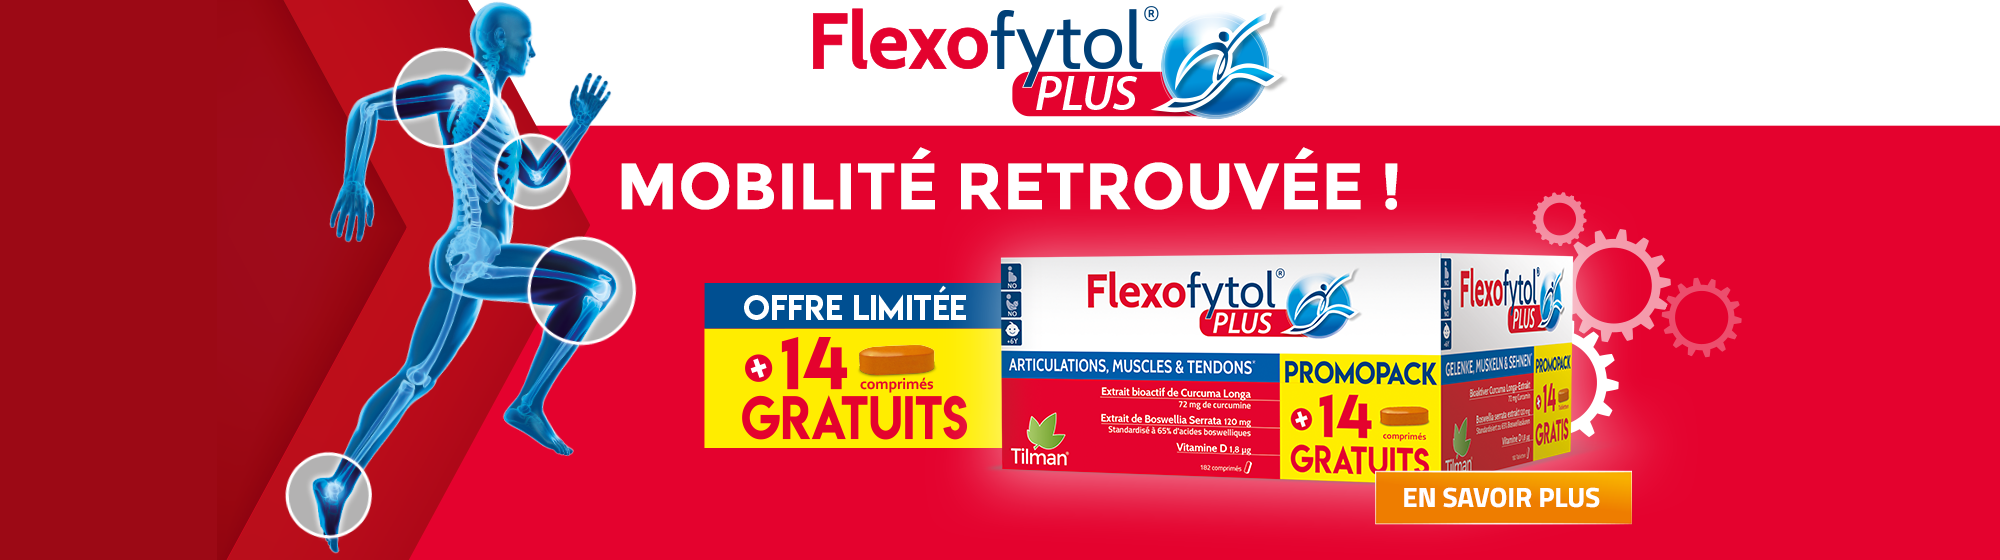 flexofytol.be-banner-flexofytol-plus_2021_desktop_fr